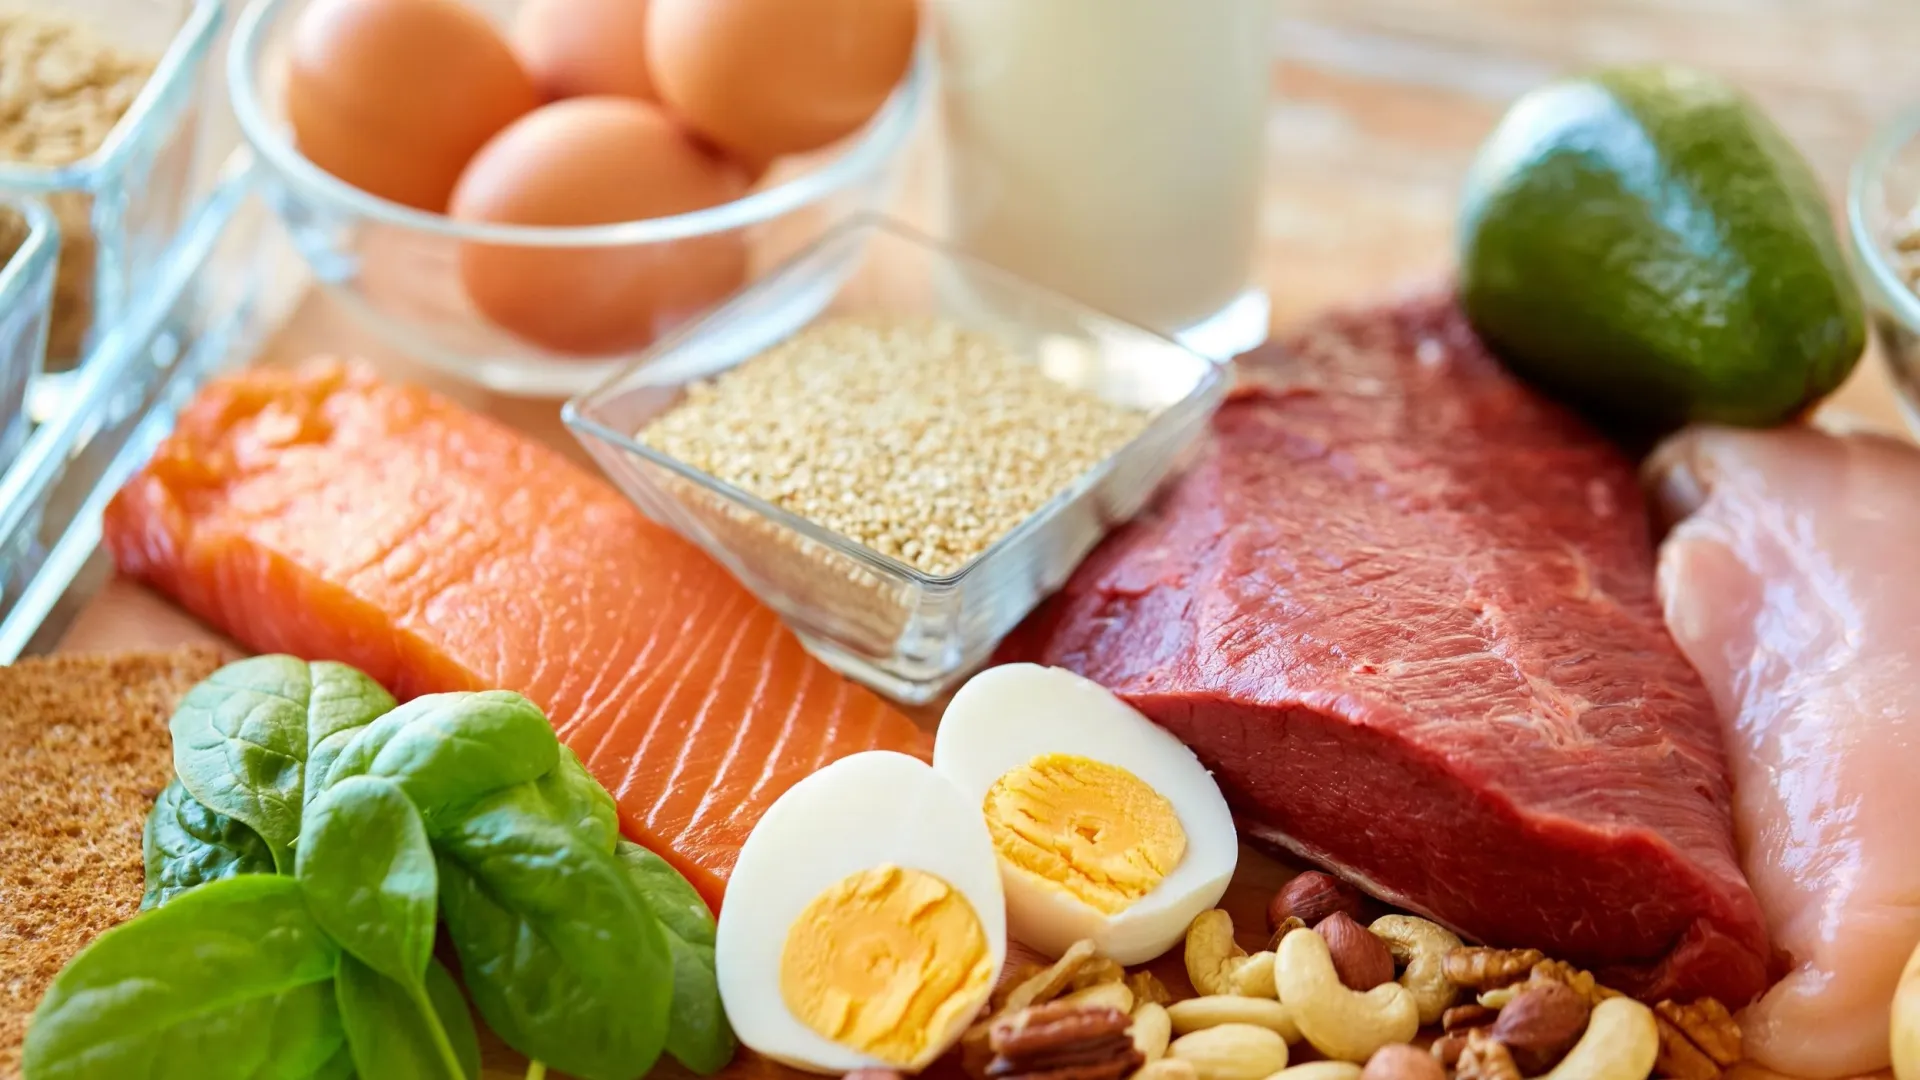 Пища с большим содержанием белка — не лучший вариант питания летом. Фото: Ground Picture / Shutterstock / Fotodom